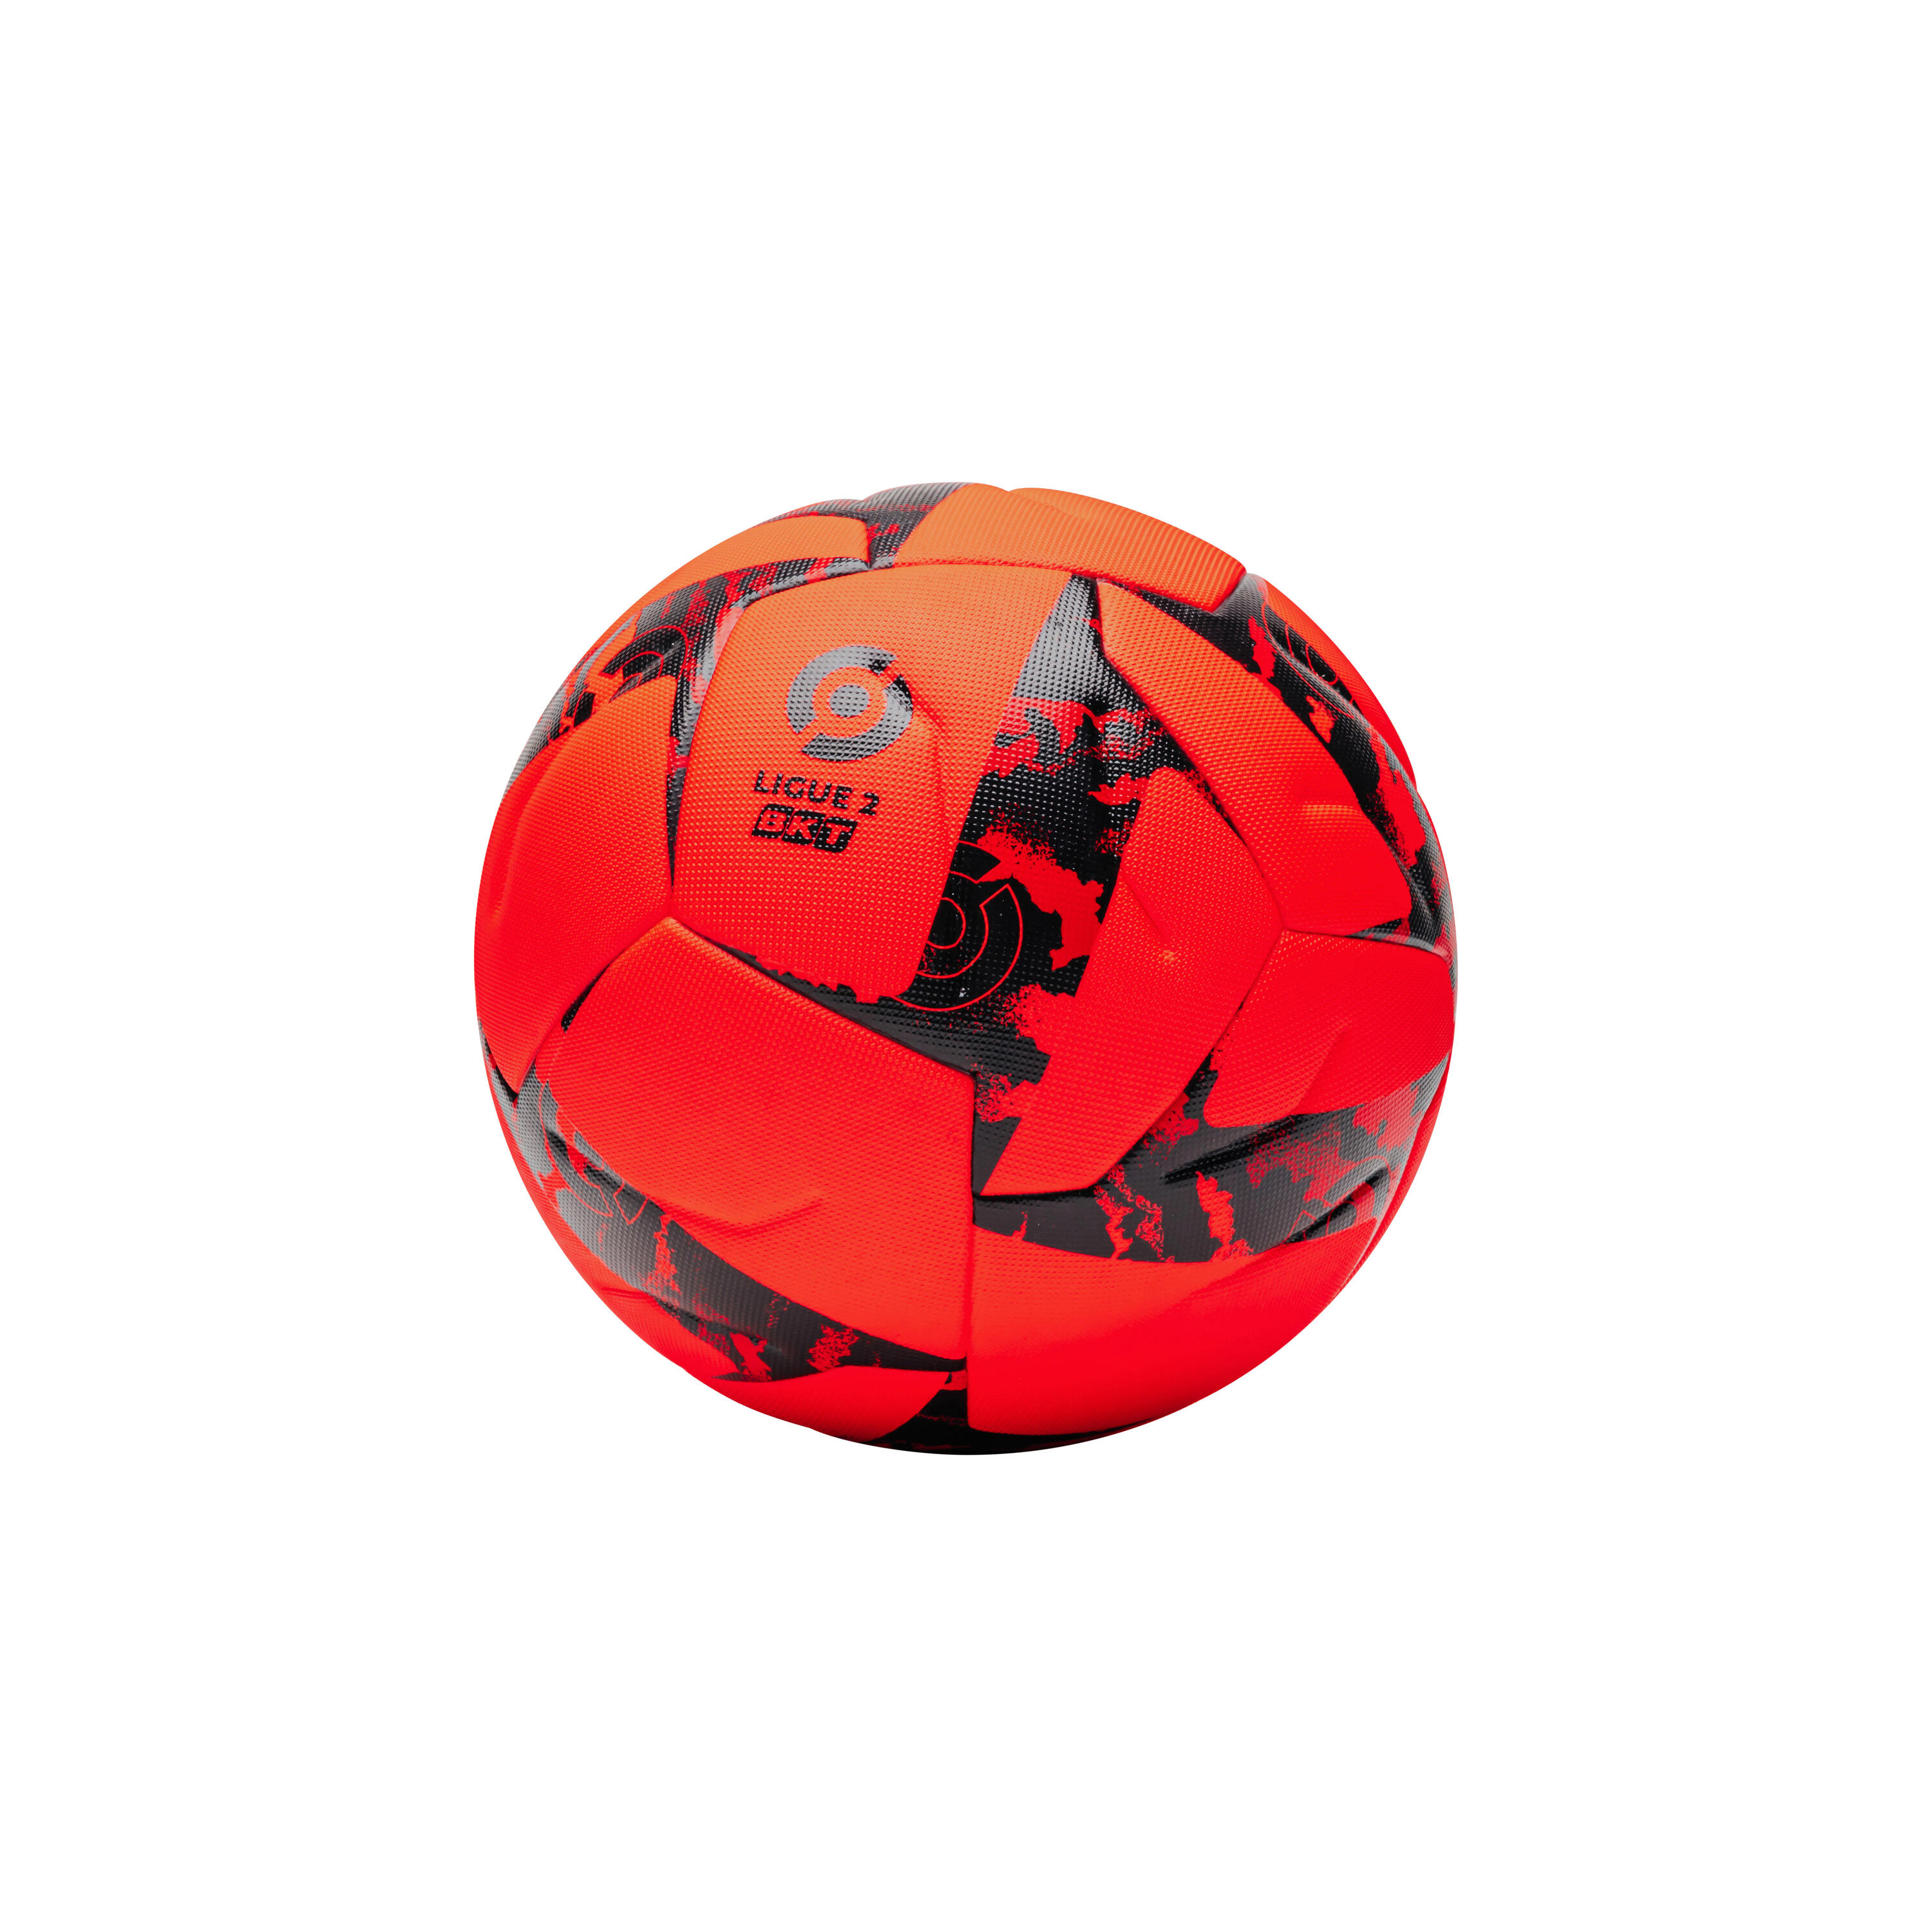 KIPSTA BKT Ligue 2 Official Winter Match Ball 2022